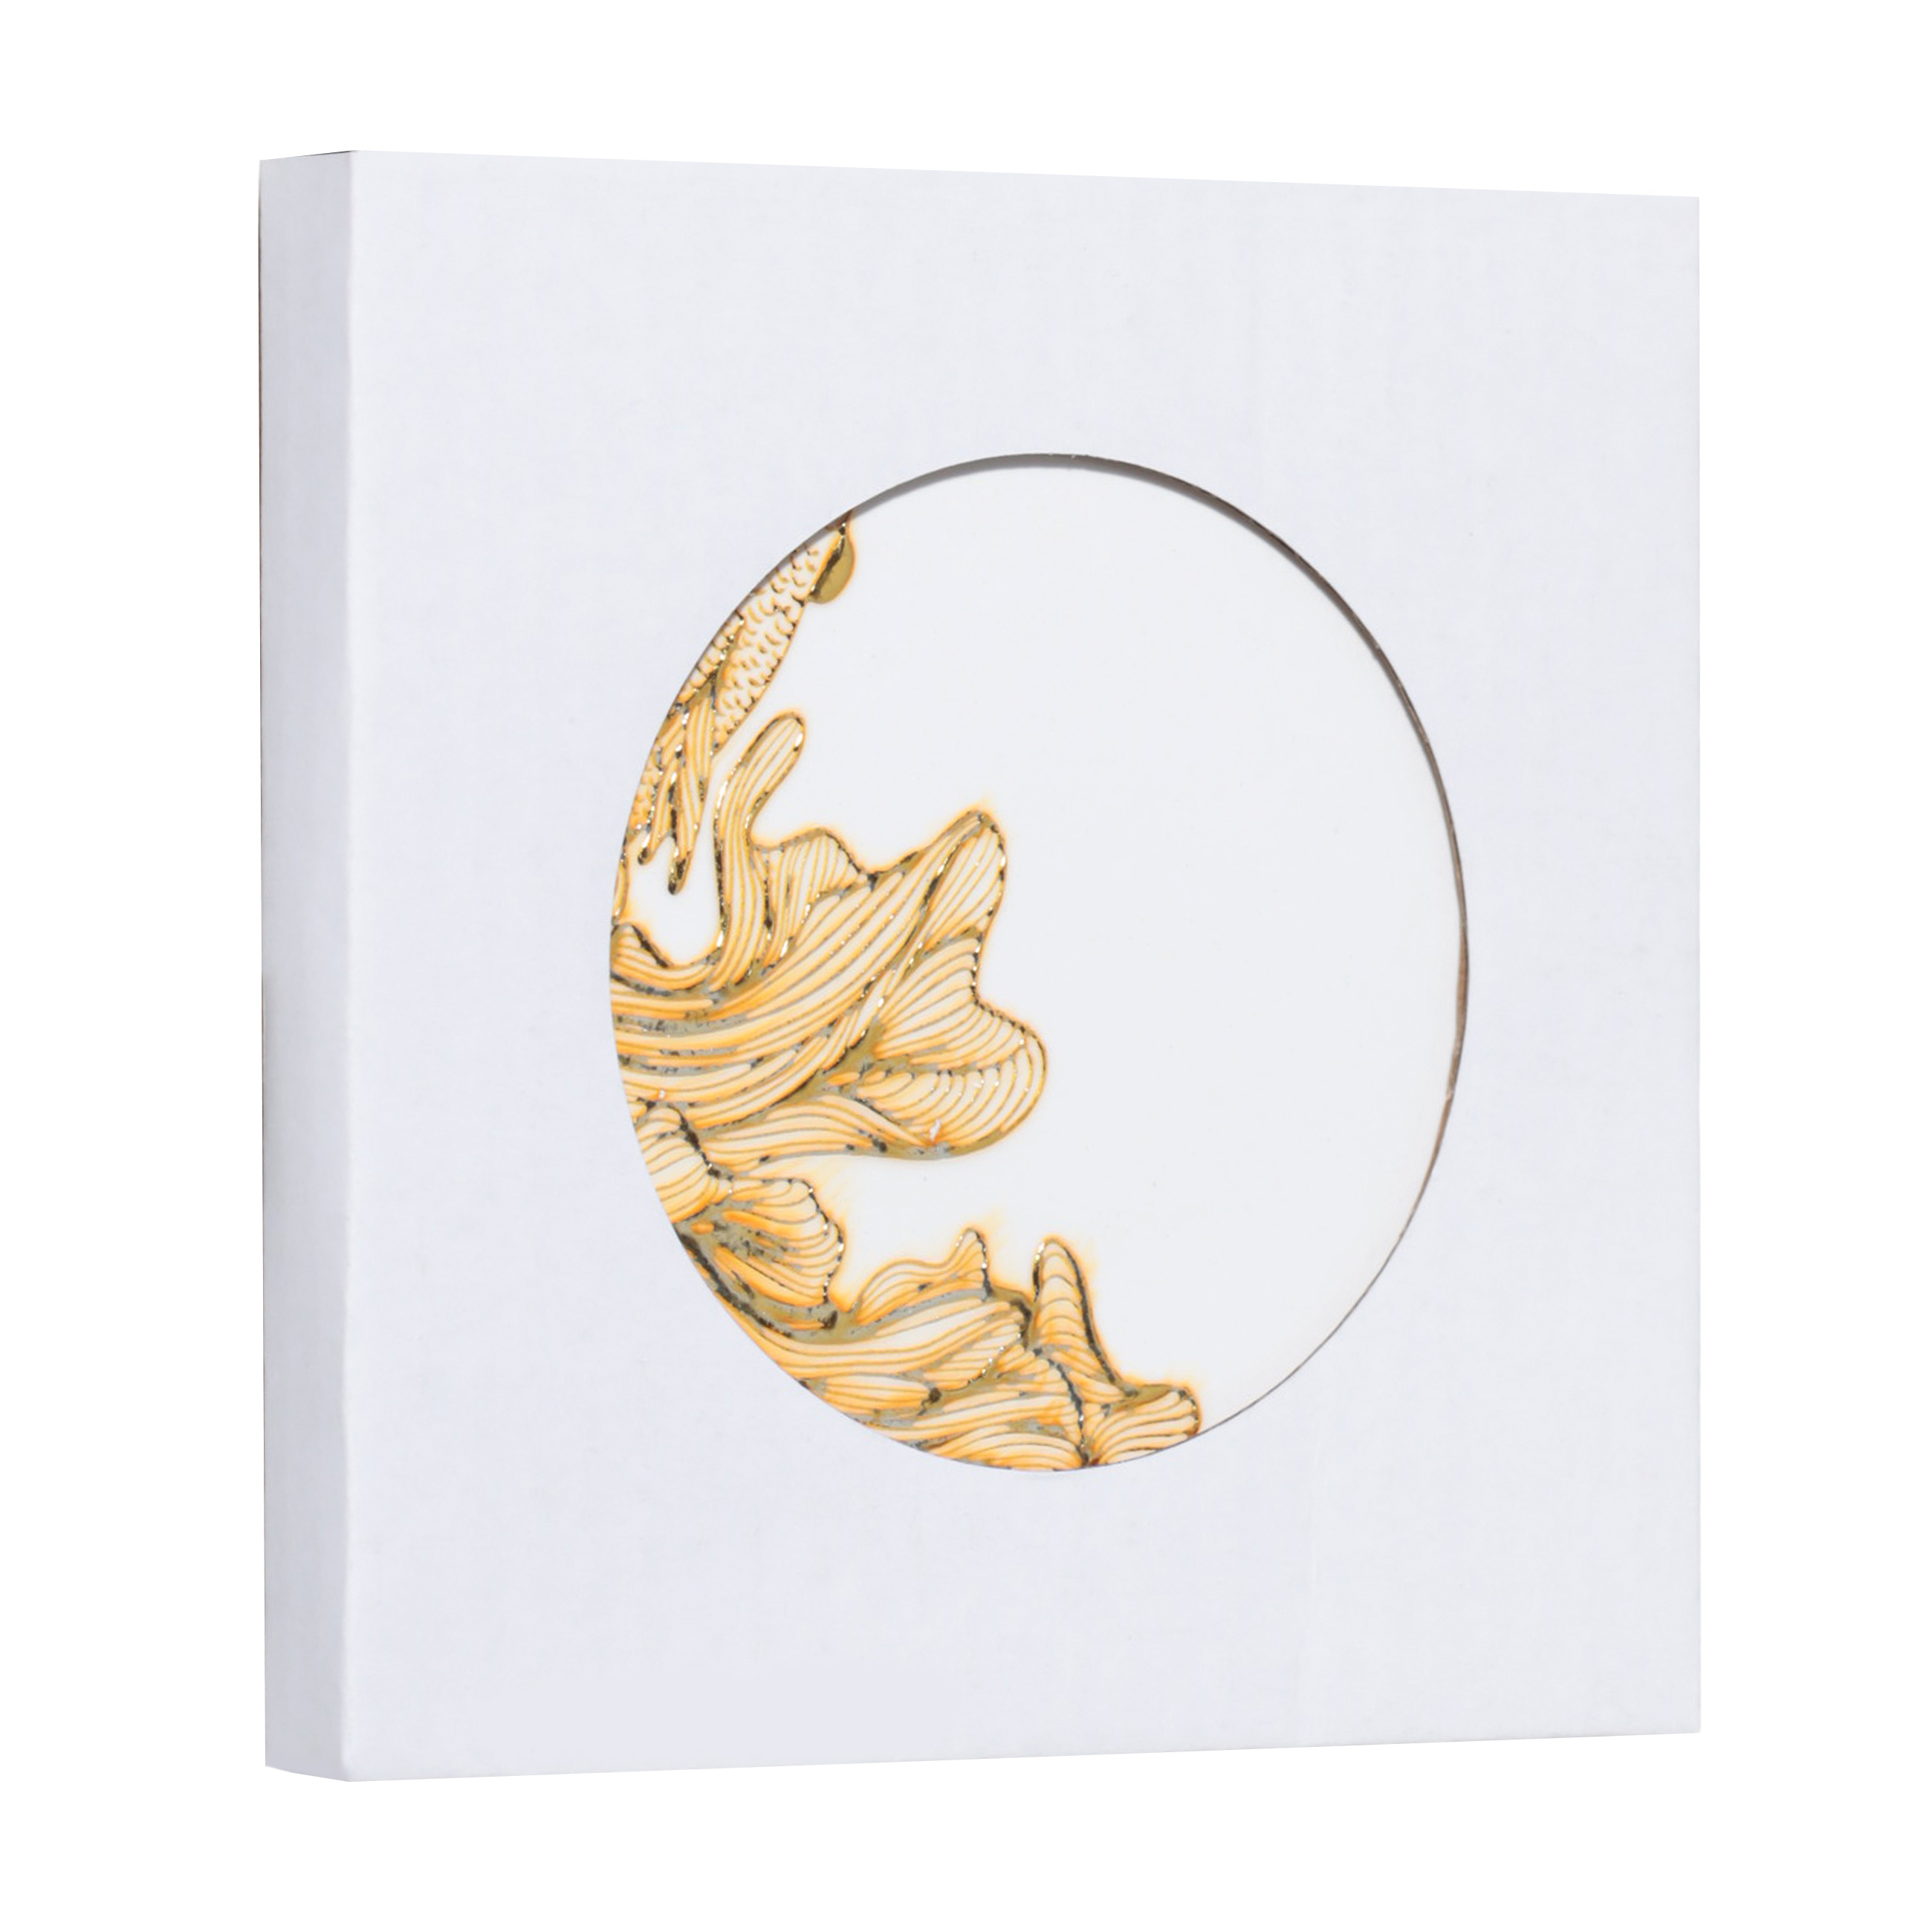 Подставка под кружку, 11 см, керамика/пробка, круглая, бело-золотистая, Рыбка, Goldfish изображение № 3